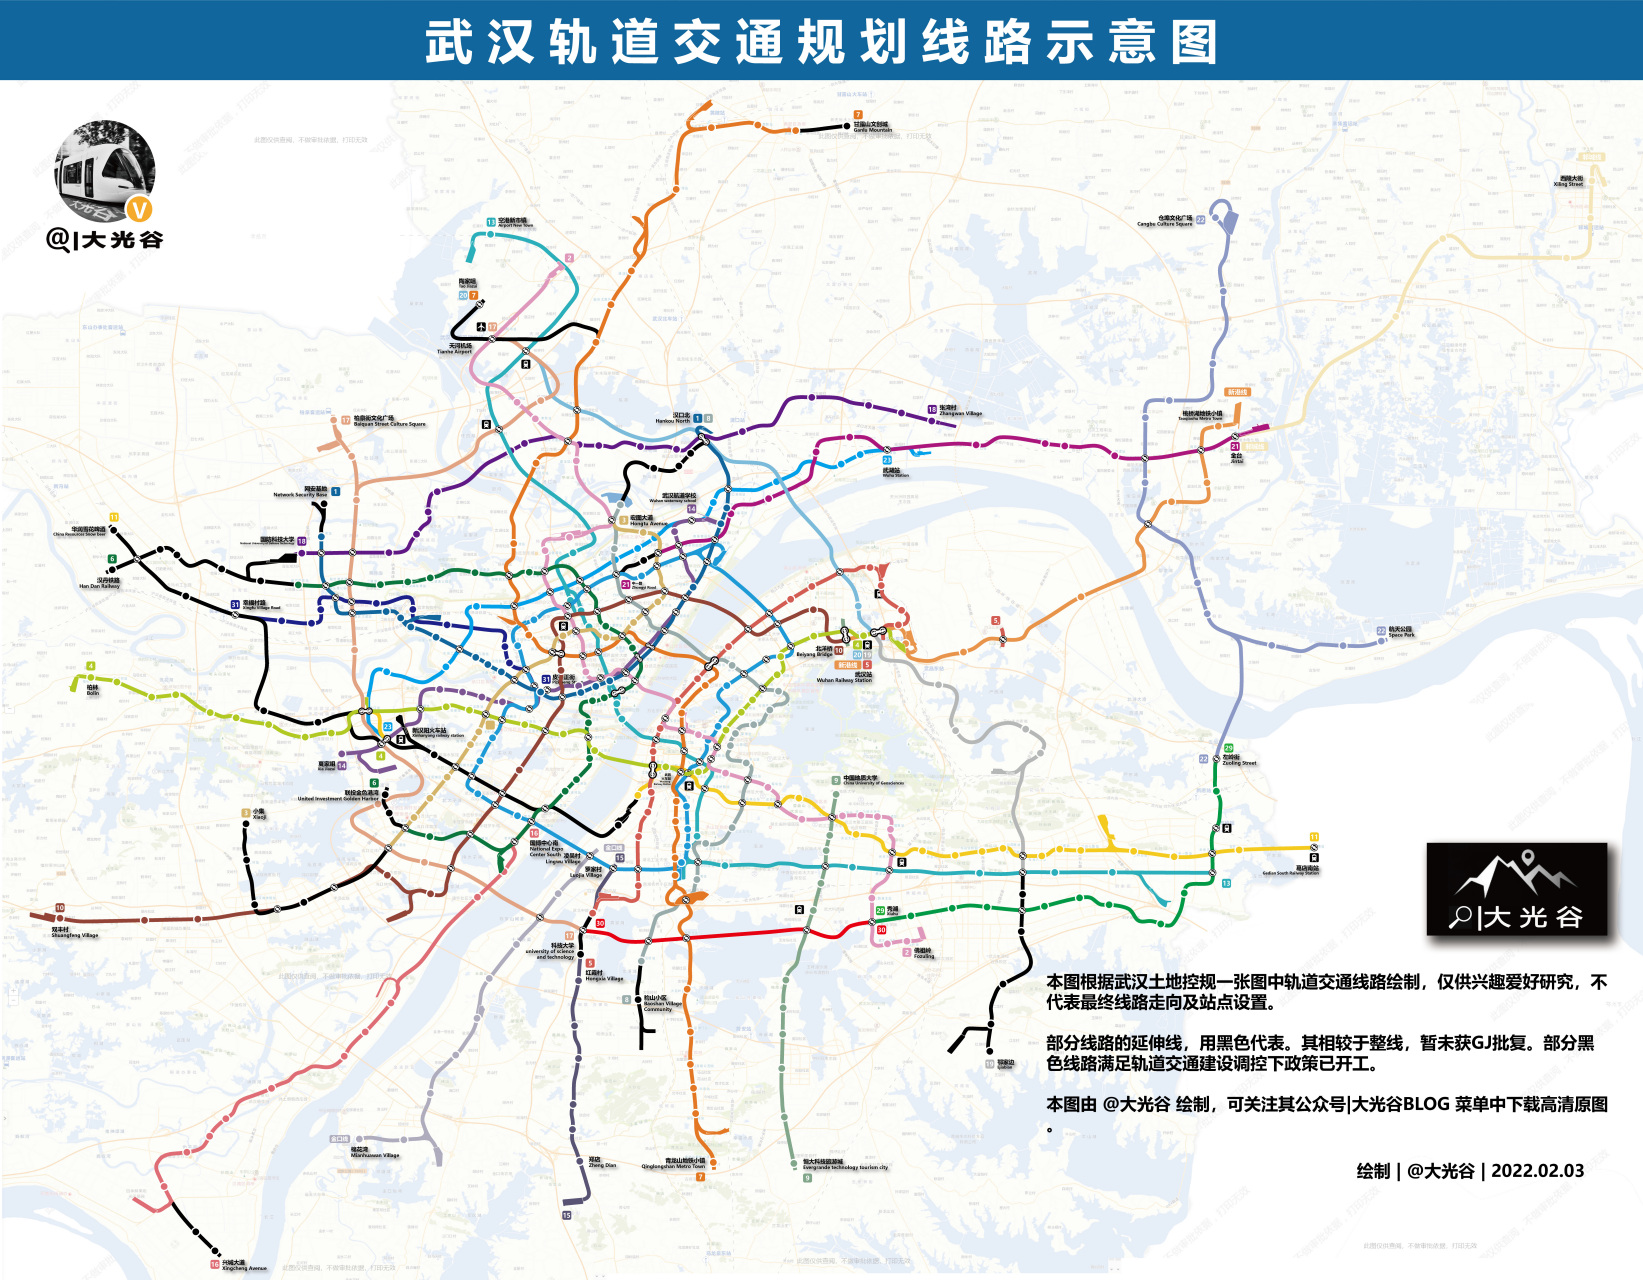 武汉地铁集团:根据第五轮建设规划正在编制,新一轮线网也正在修编